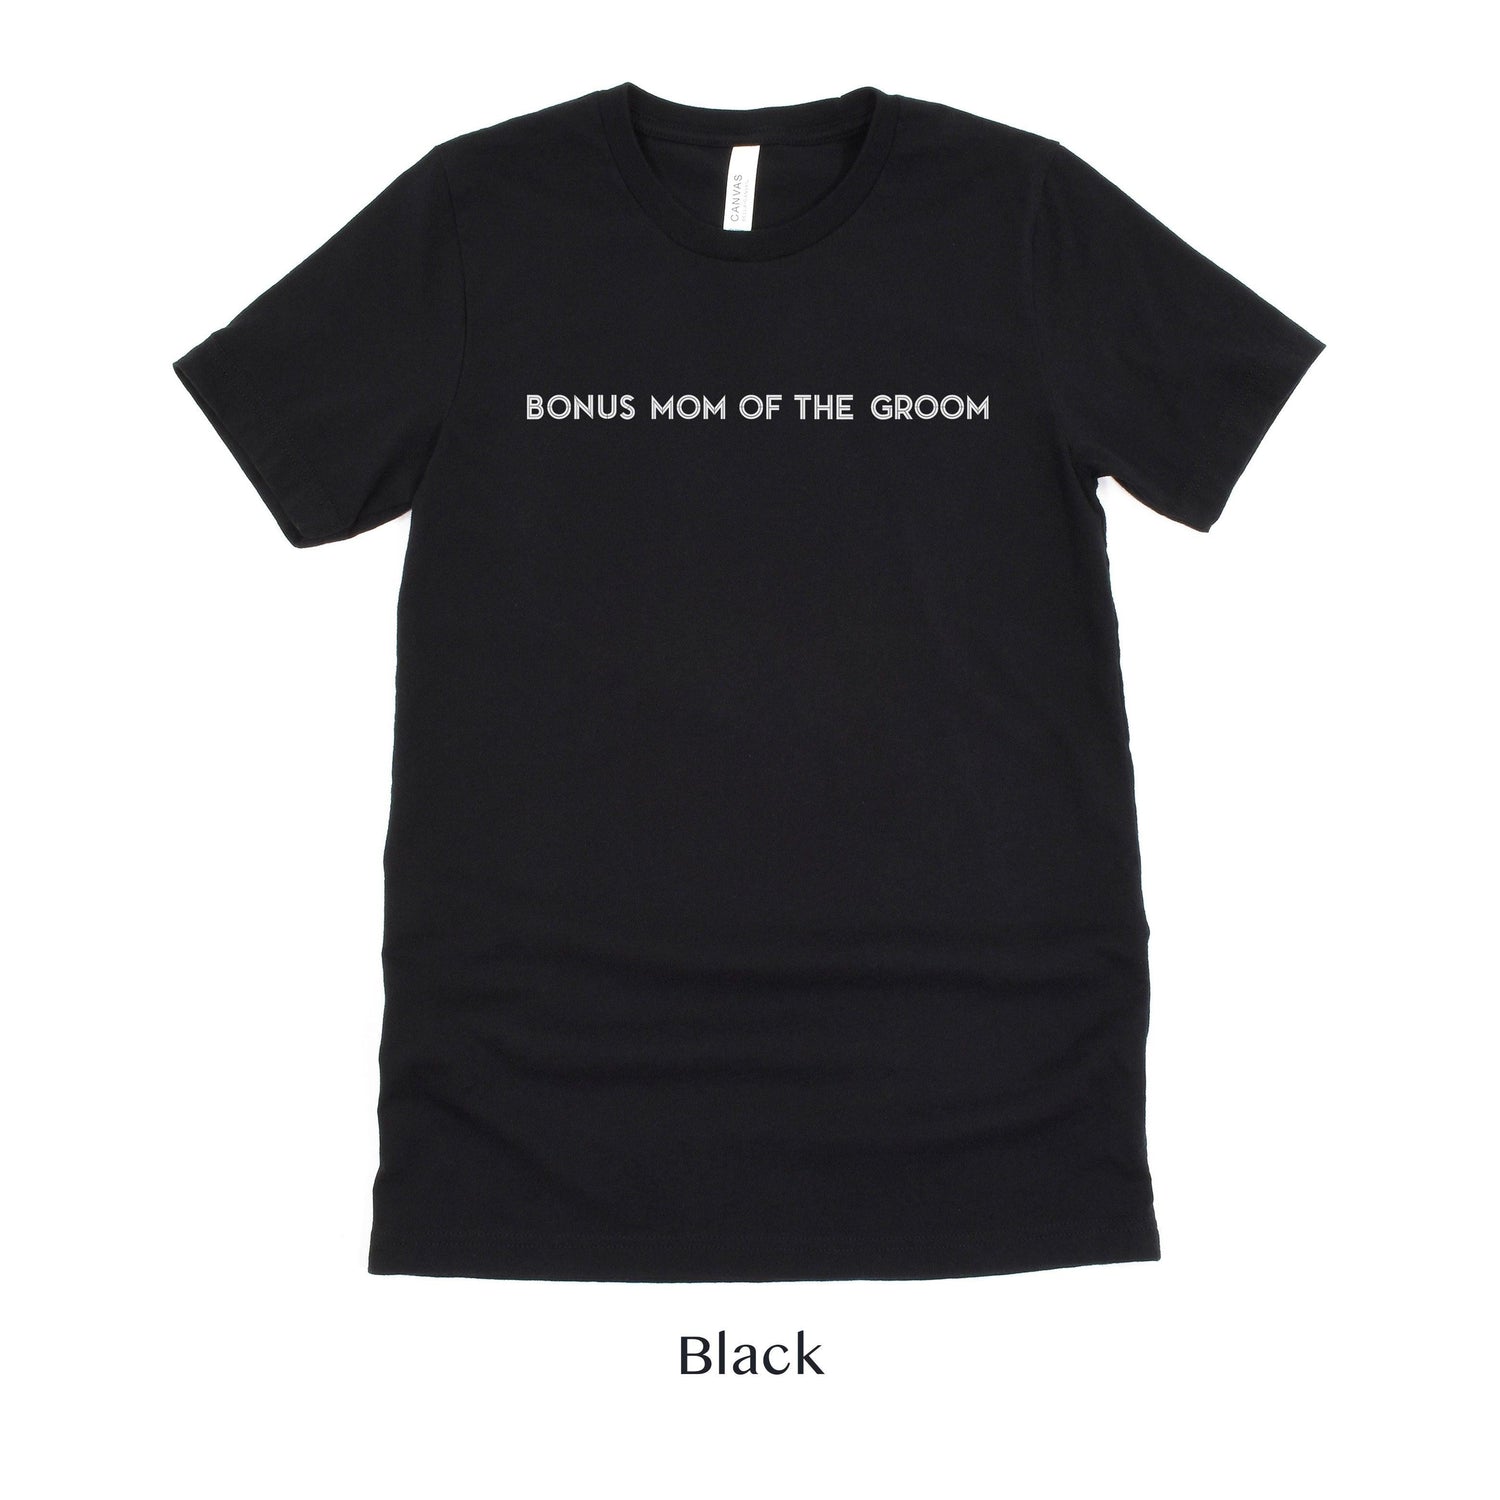 Bonus Mom of the Groom Shirt - Matching Wedding Party tshirts - Unisex t-shirt by Oaklynn Lane - Black Tee